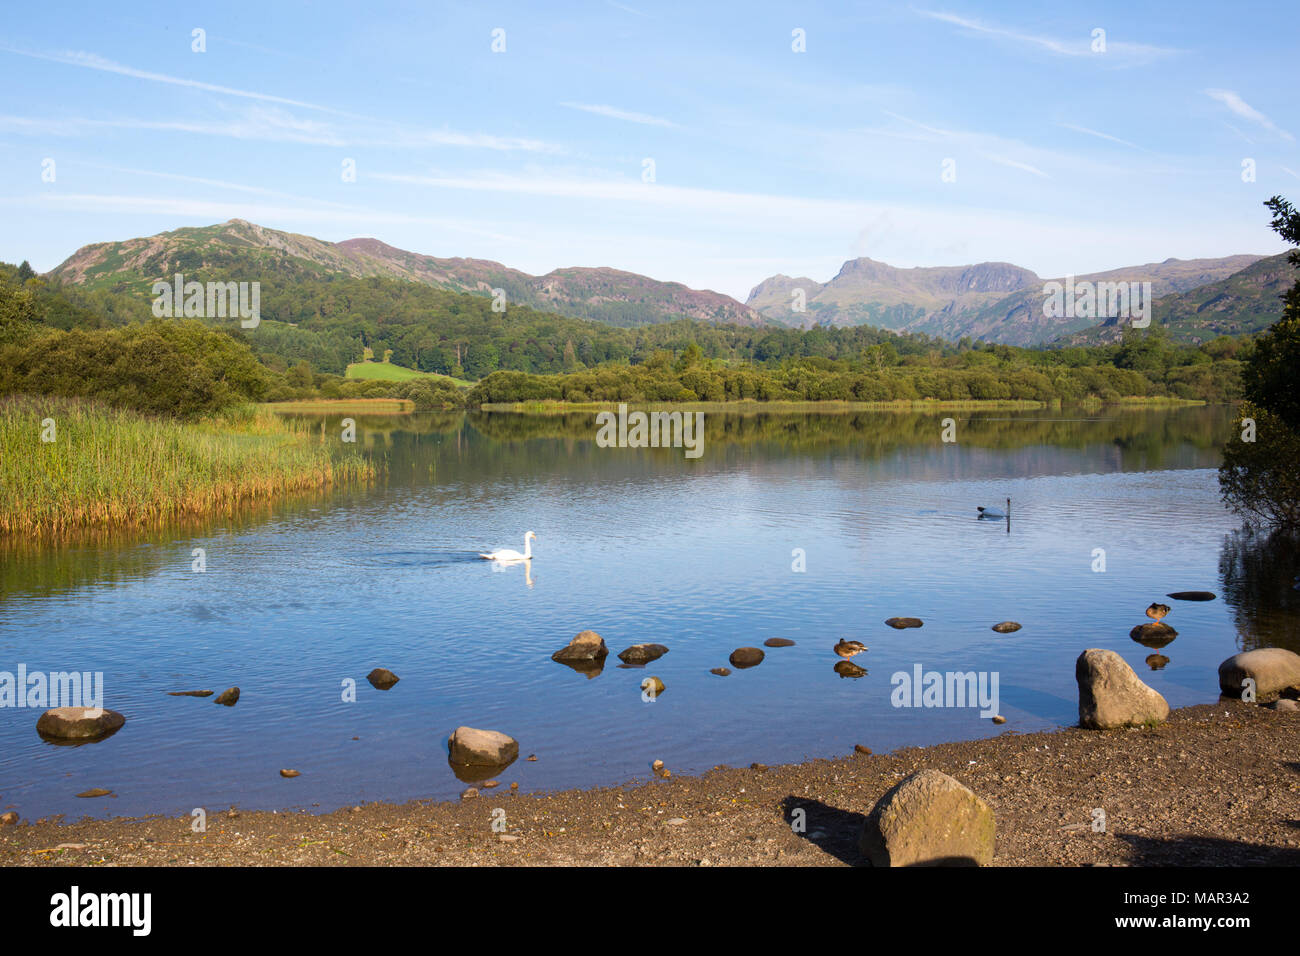 L'eau de la rivière Brathay, Elter, Lake District, UNESCO World Heritage Site, Cumbria, Angleterre, Royaume-Uni, Europe Banque D'Images